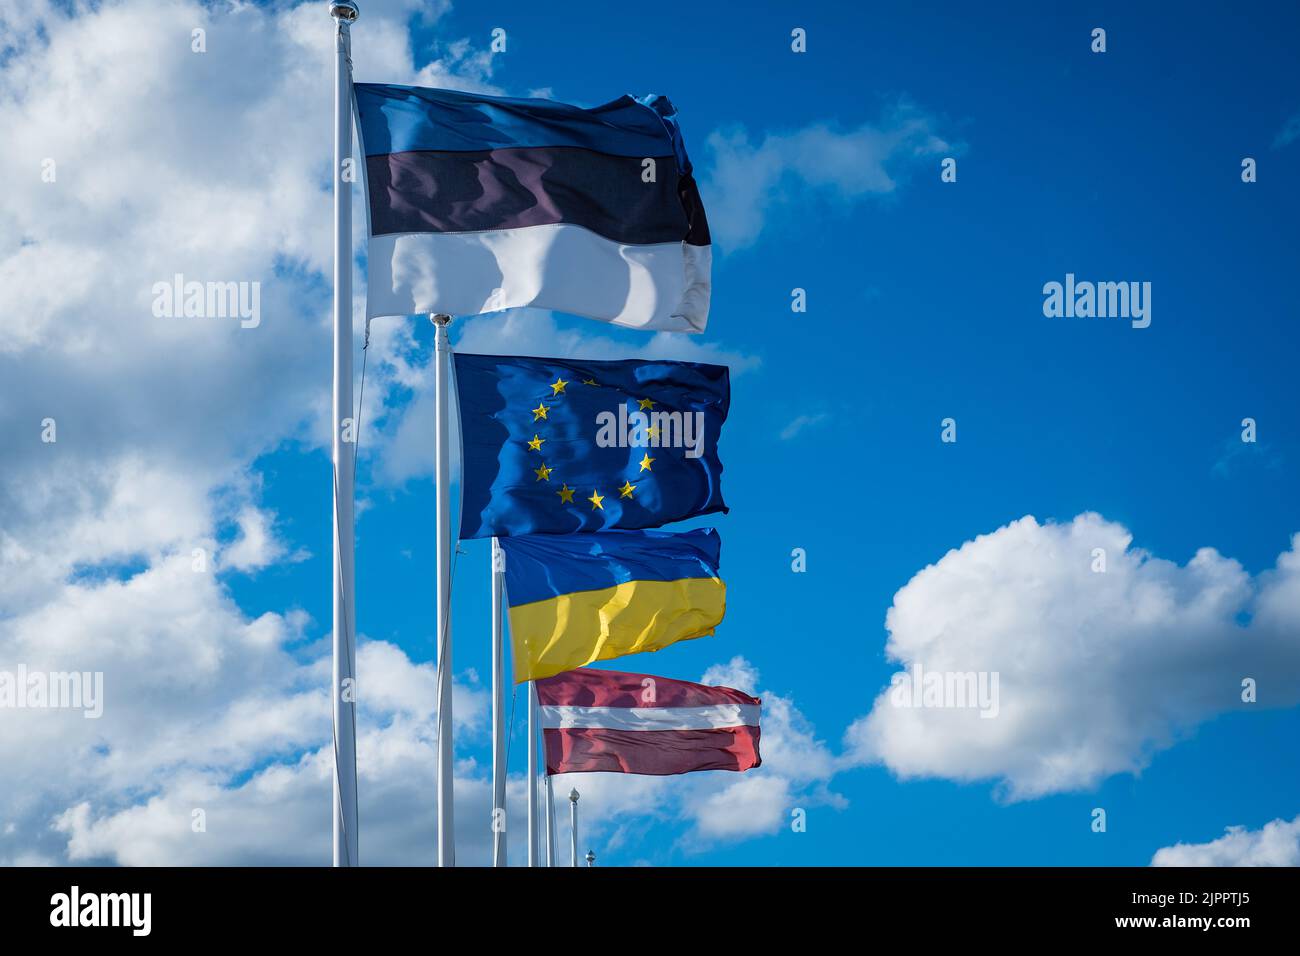 Le bandiere di Estonia, Unione europea, Ucraina e Lettonia sventolano nel vento. Bandiera estone insieme alle bandiere UE, Ucraina e Lettonia. Foto Stock